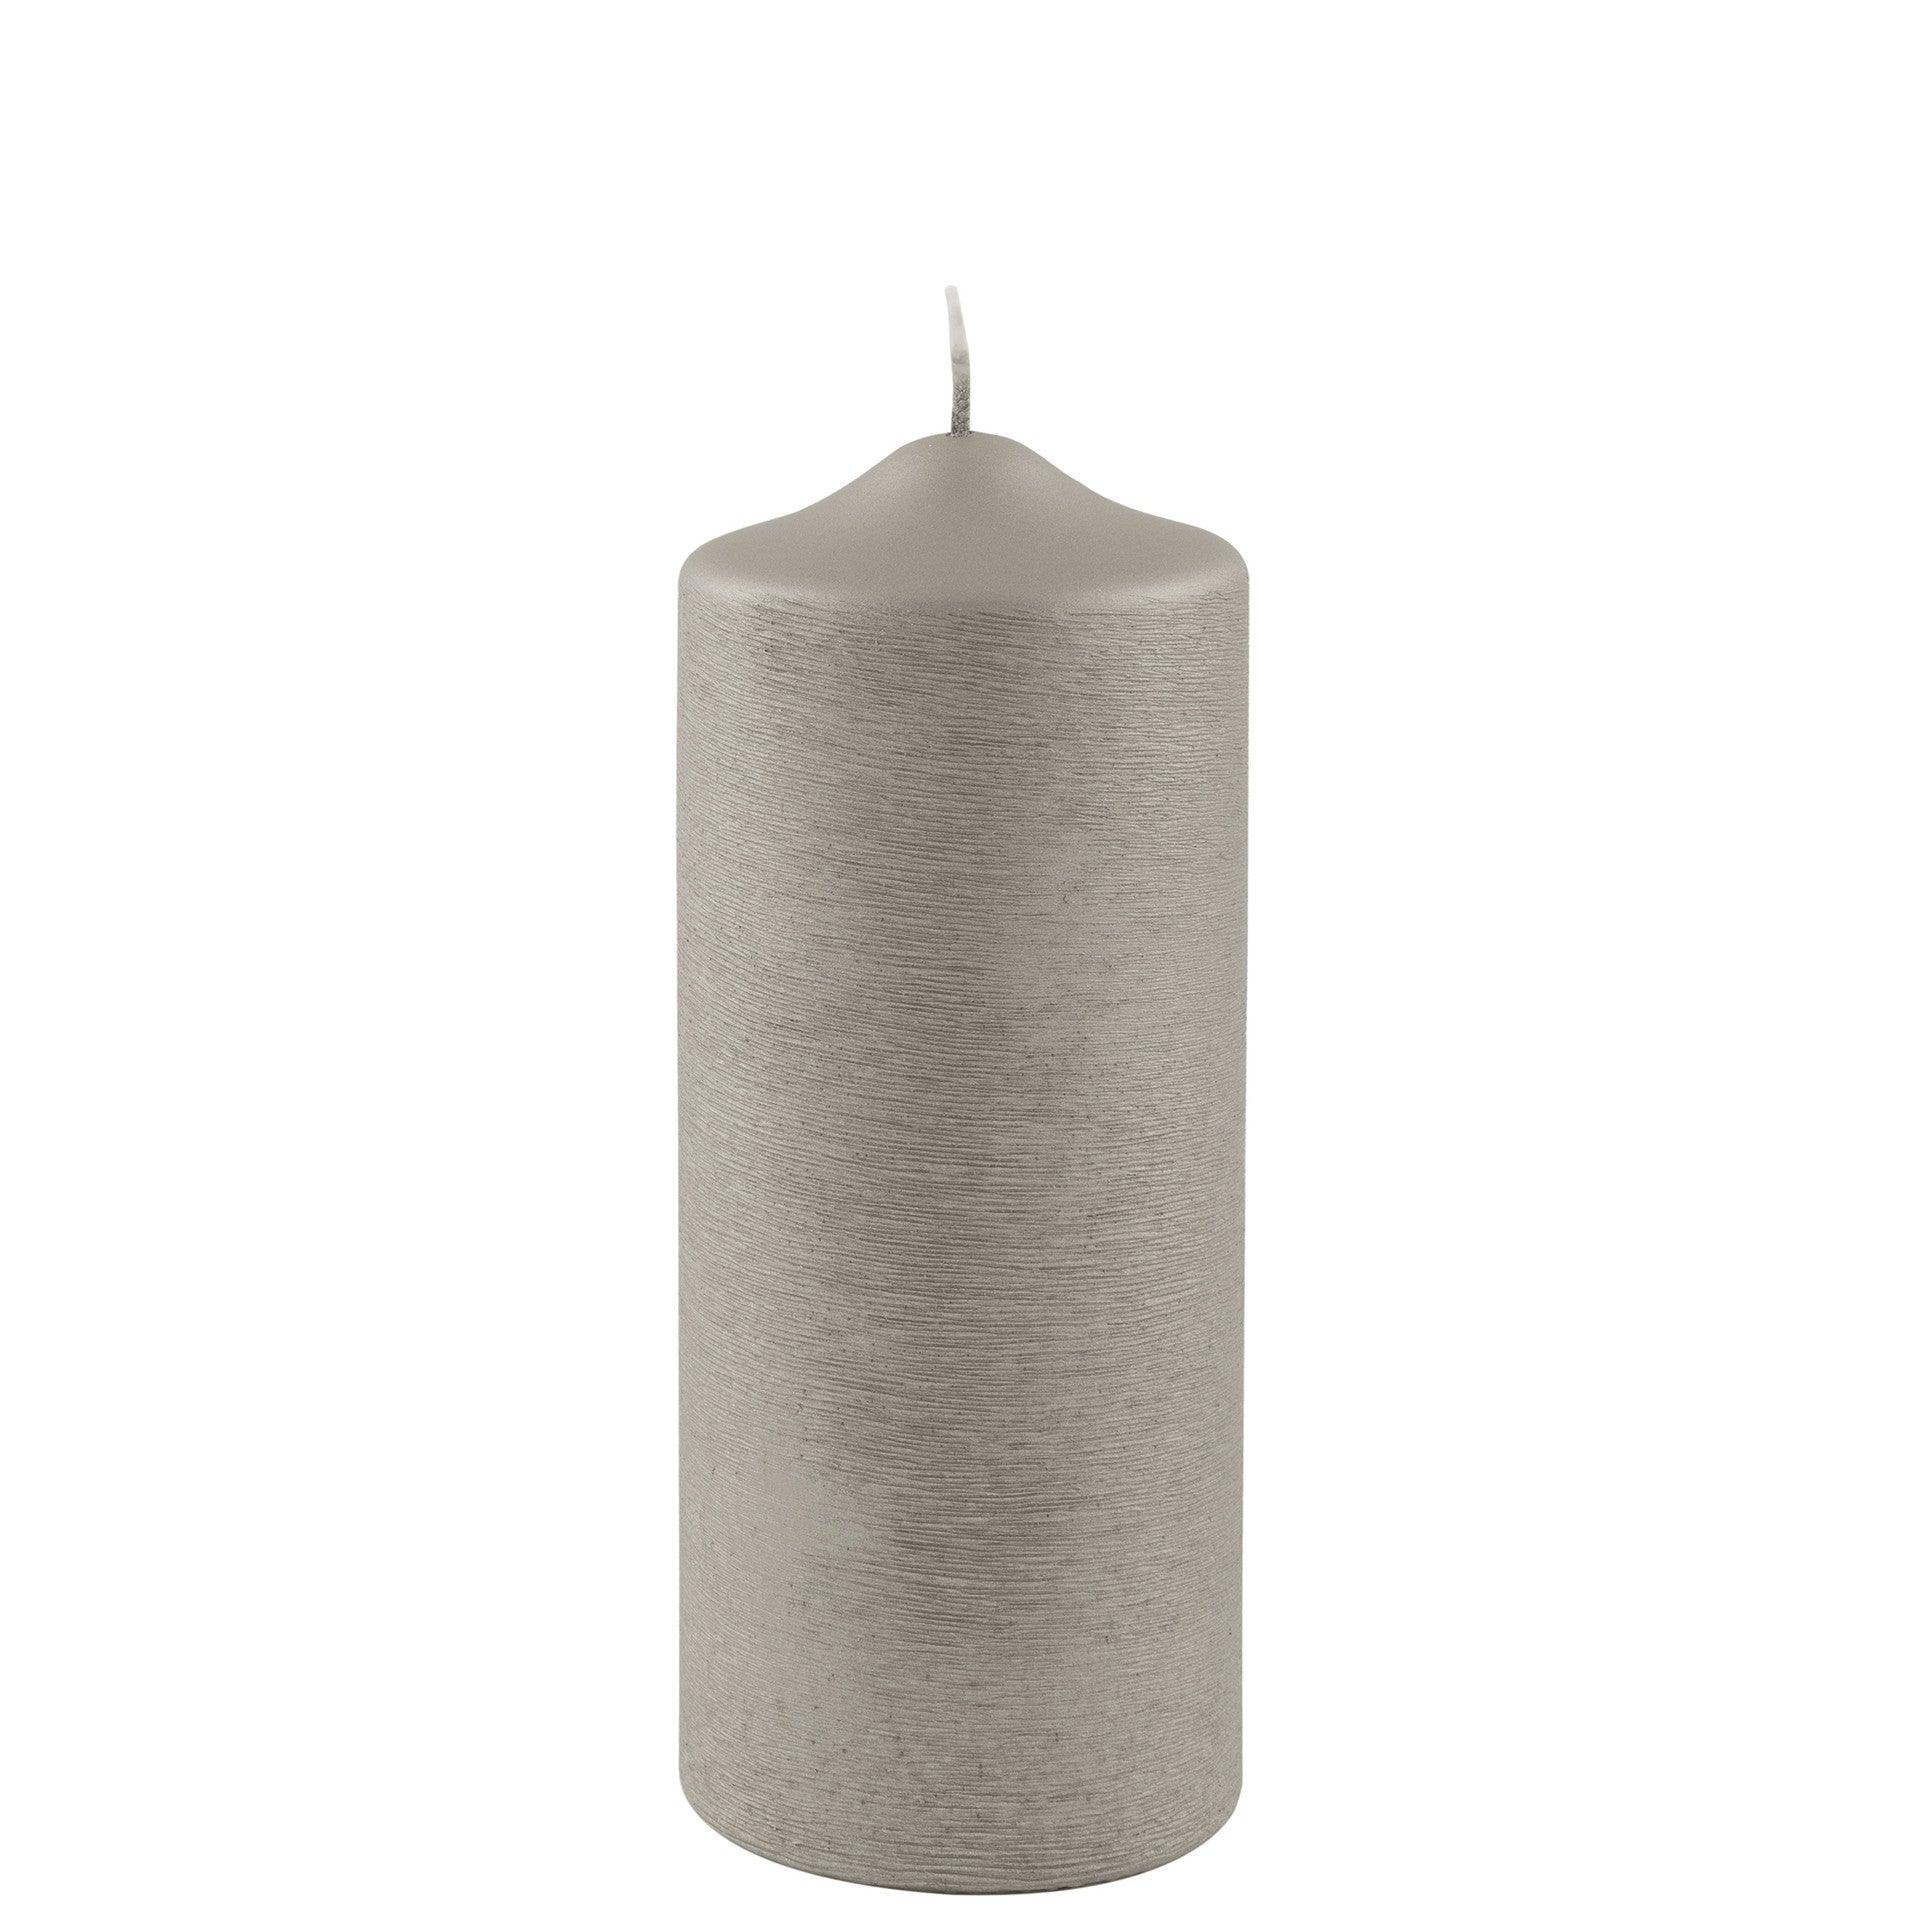 Fink Candle Stumpenkerze gebürstet metallic Stein 20cm - HomeDesign Knaus wir schaffen Inspirationen 